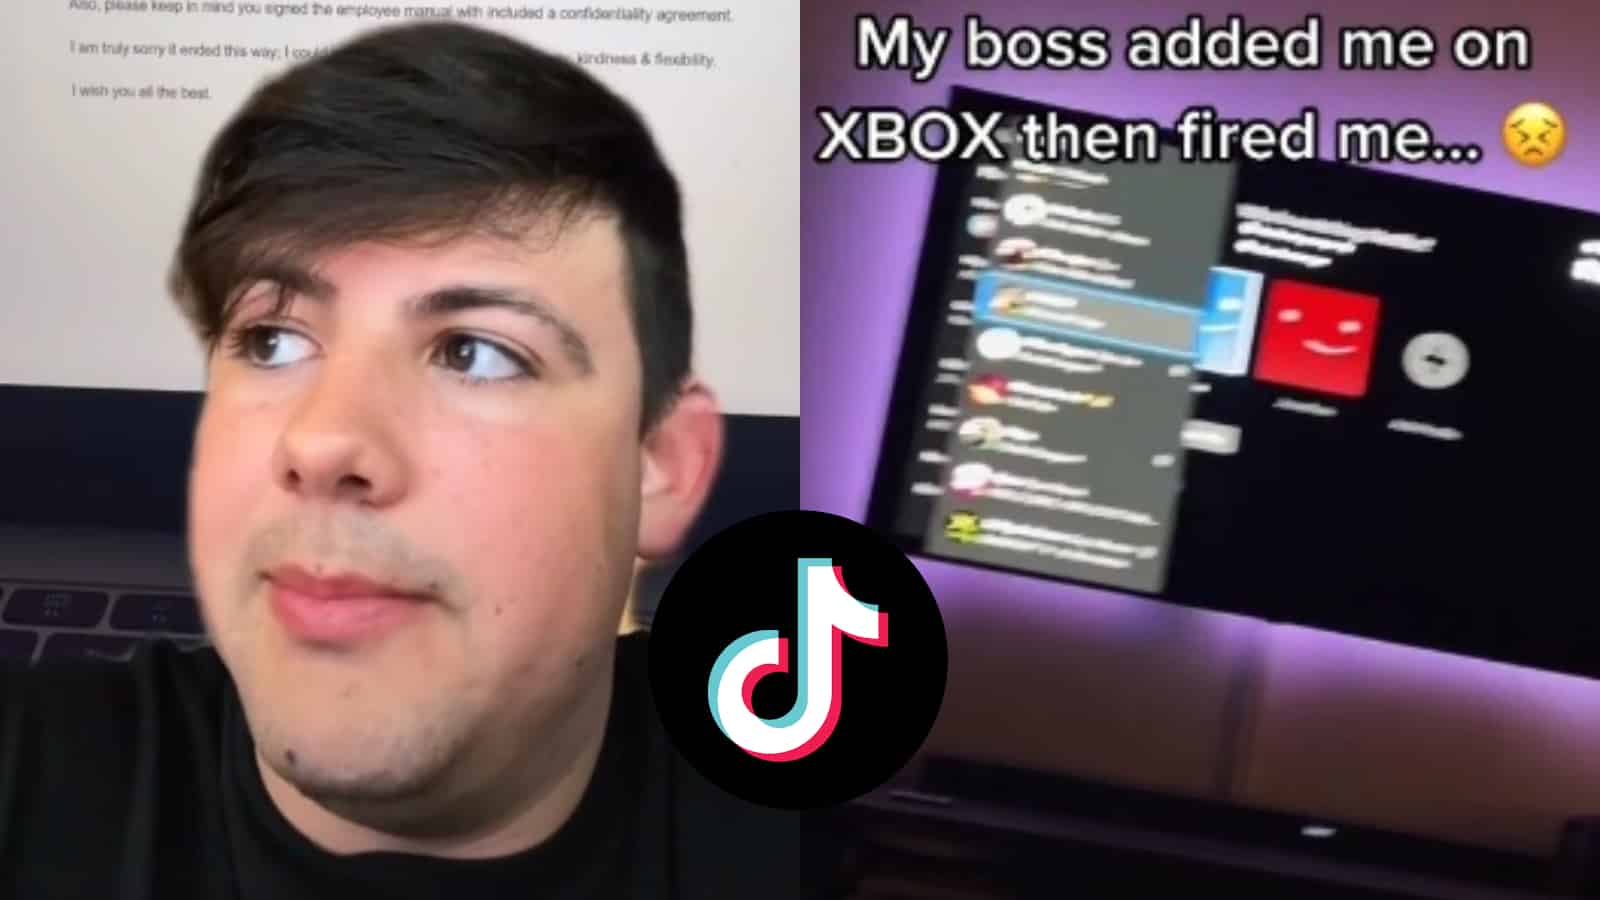 TikToker fired for adding boss on xbox